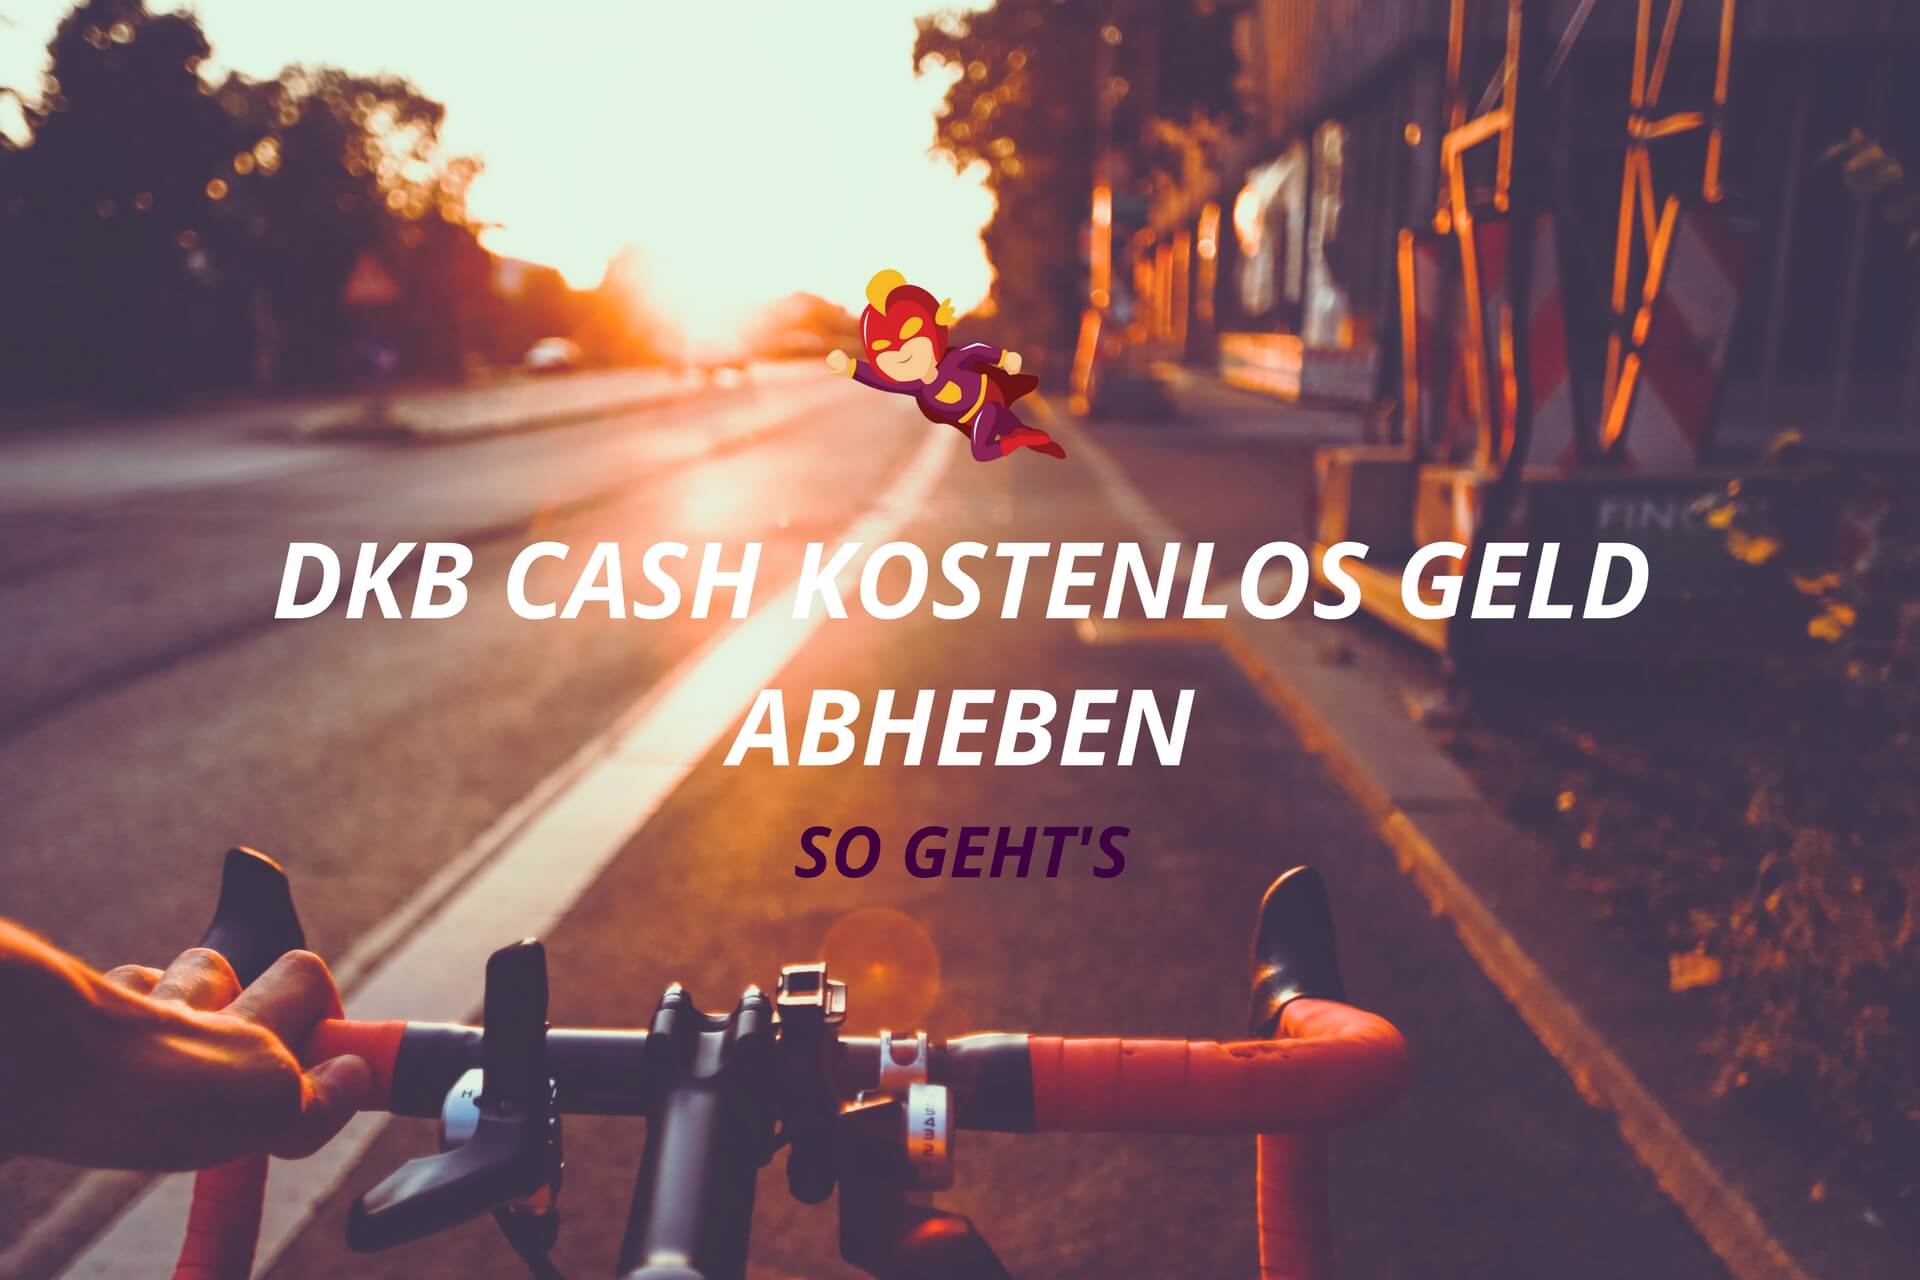 DKB Cash kostenlos Geld abheben Tipps und Möglichkeiten - Finanzhelden.org